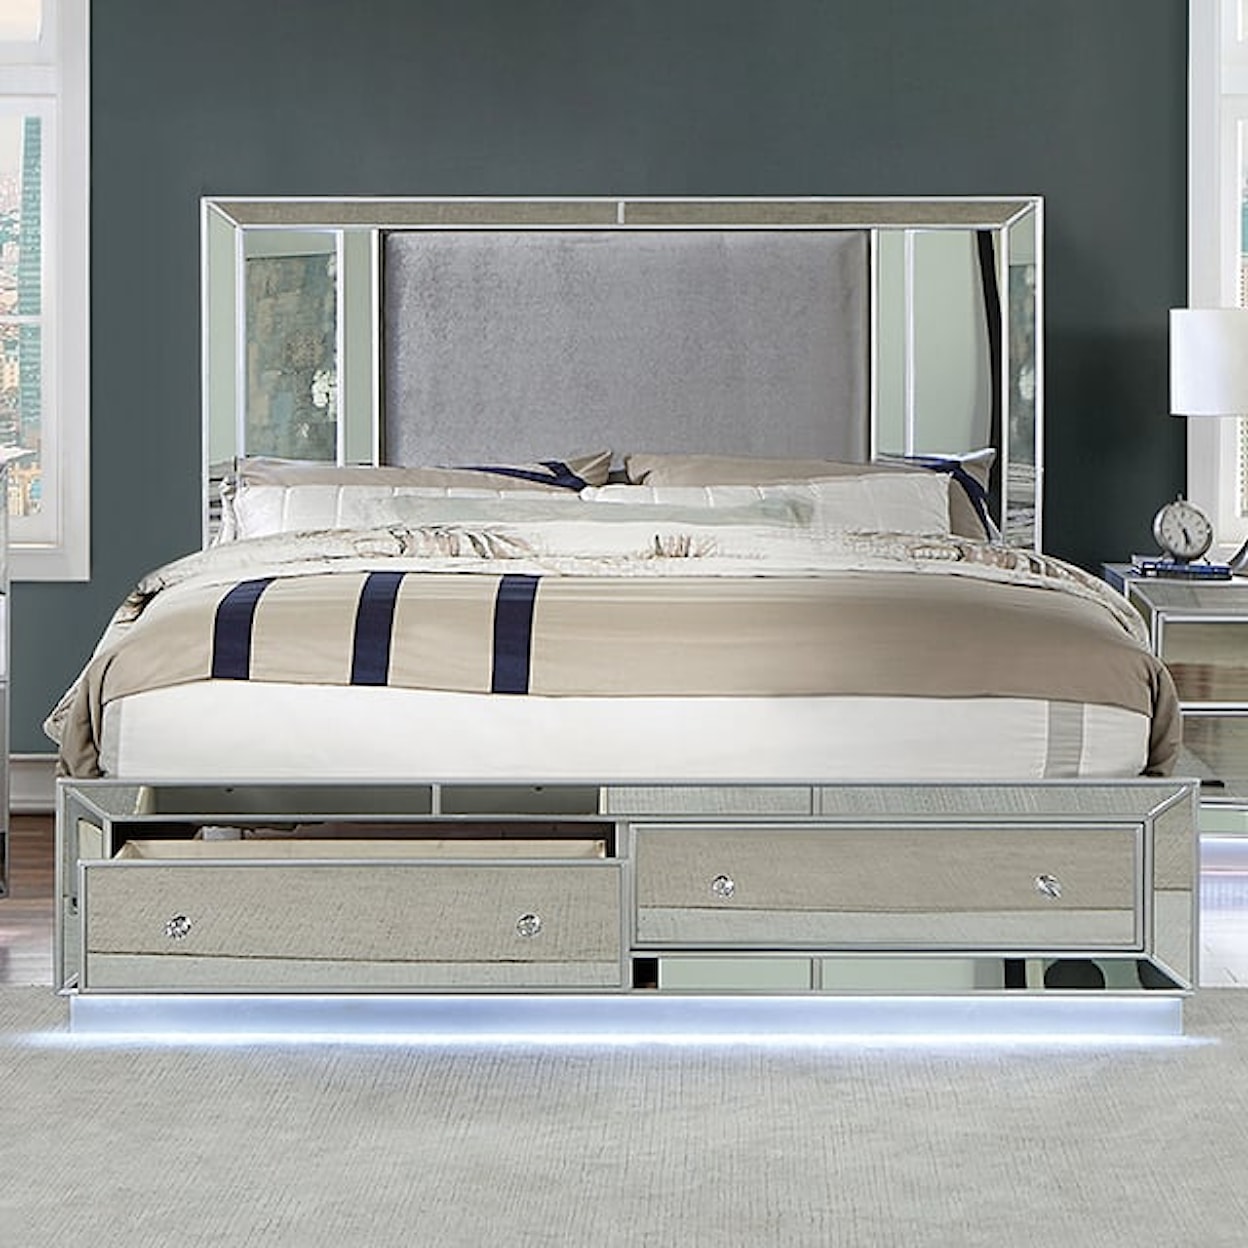 Furniture of America Belladonna Queen Panel Bed